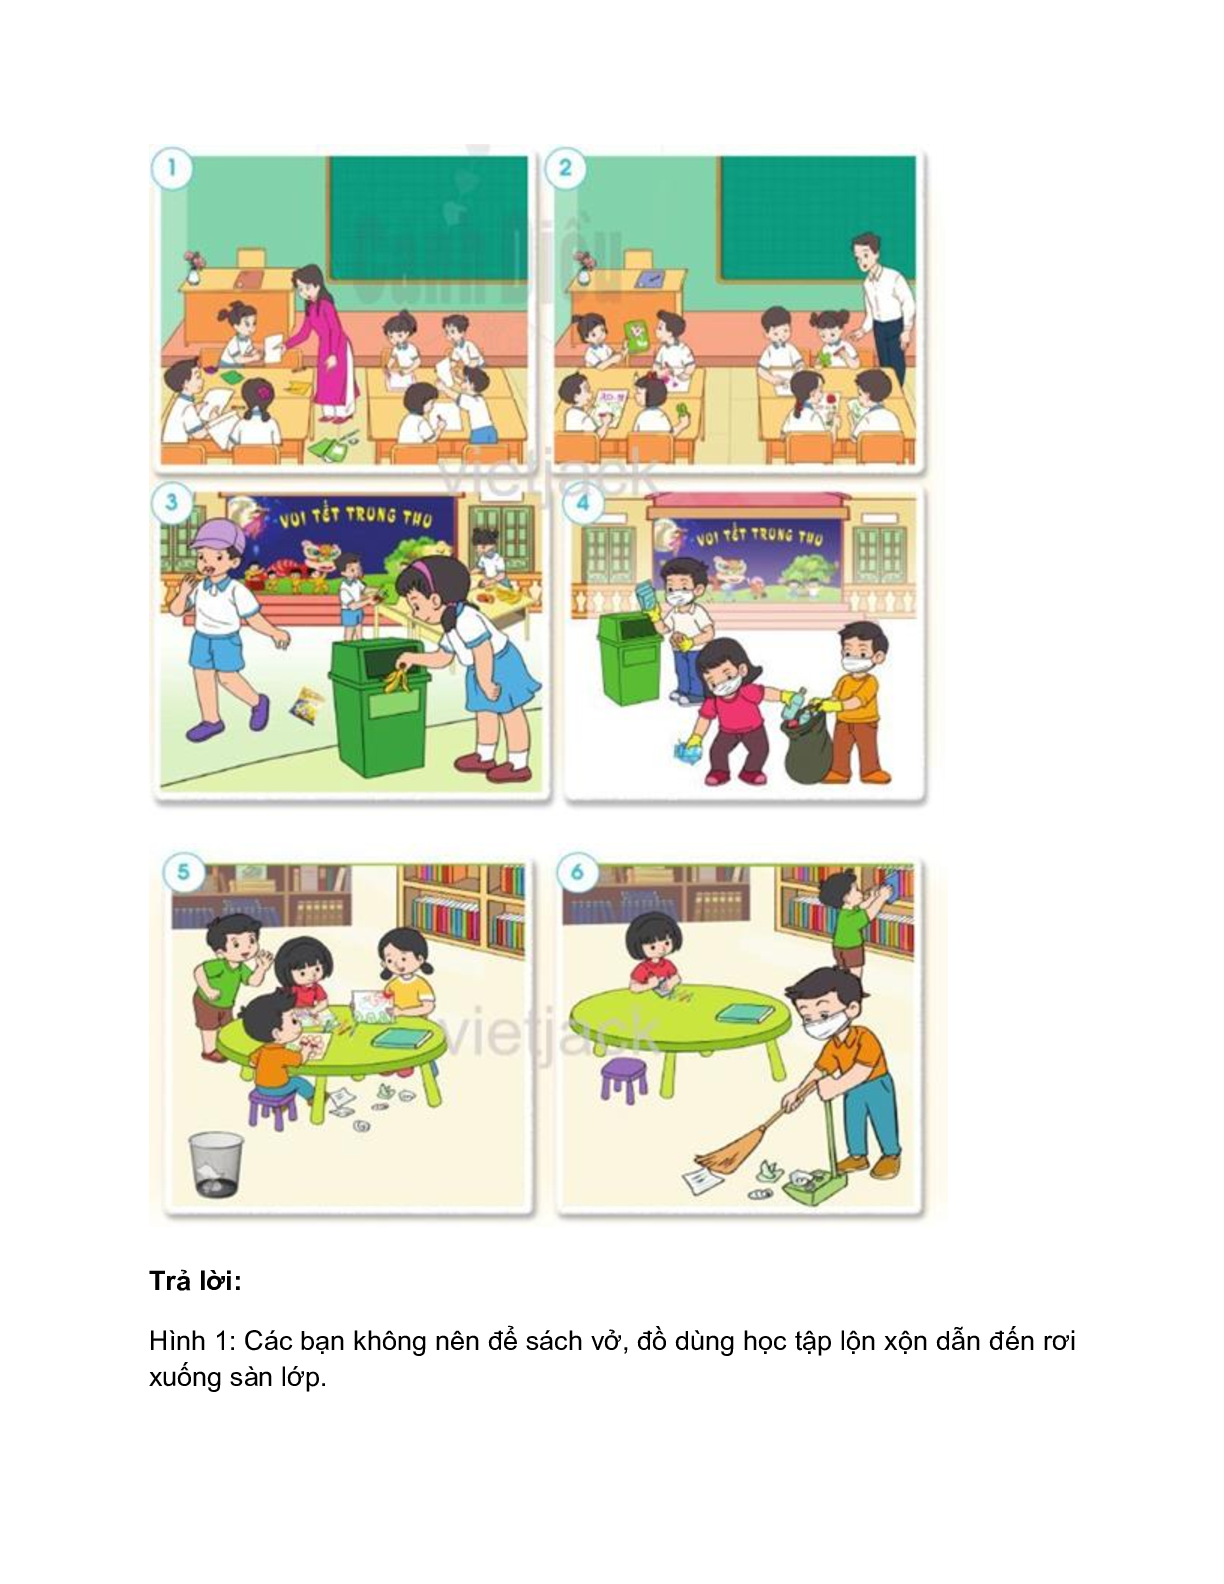 Giải SGK Tự nhiên và Xã hội lớp 2 trang 32, 33, 34 Bài 6: Giữ vệ sinh trường học – Cánh diều (trang 2)